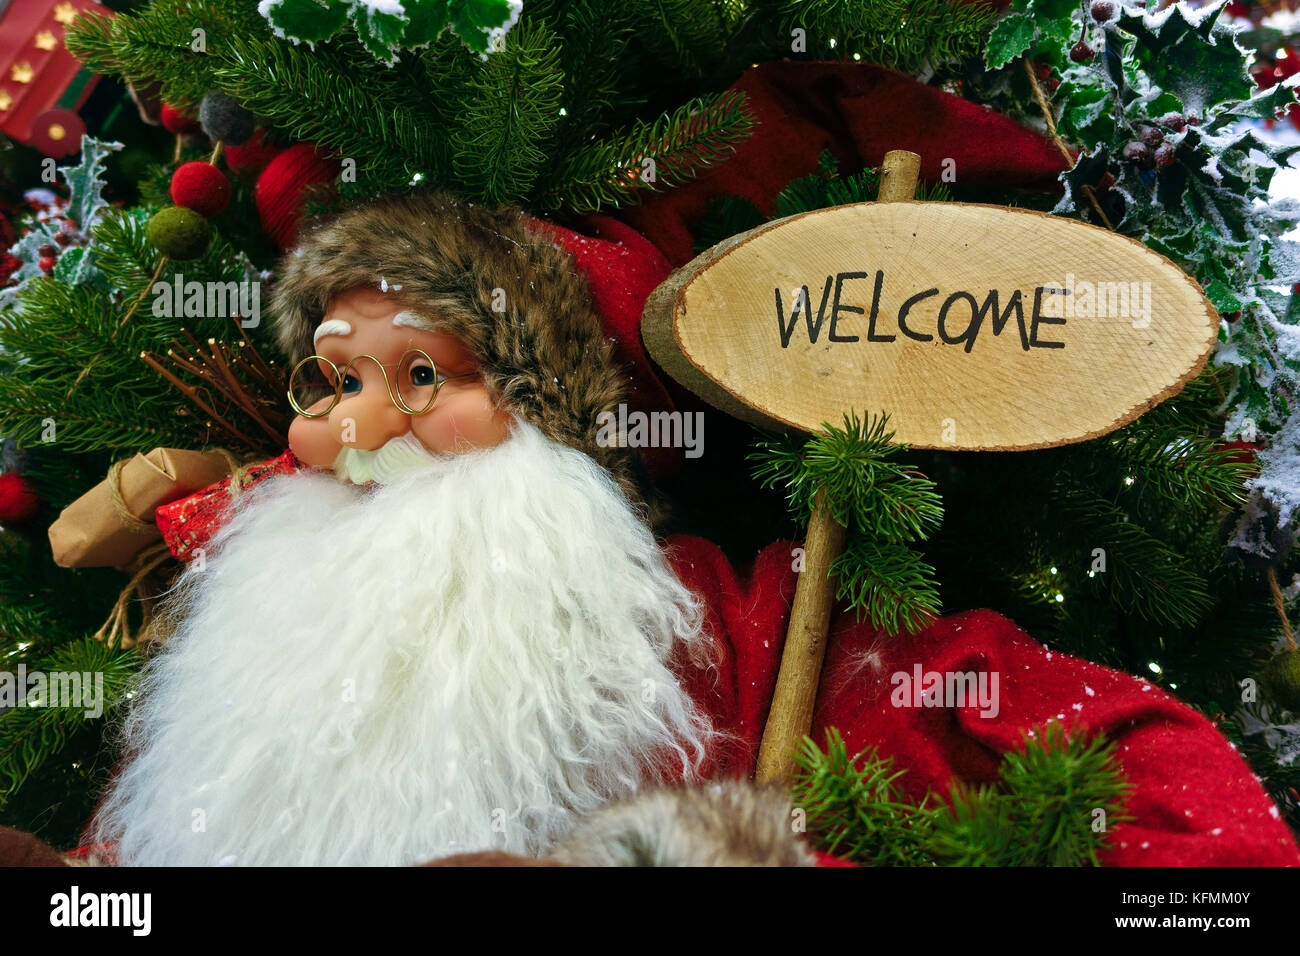 Weihnachtsmann, Christbaumschmuck, Holding a Board lesen Willkommen. Nahaufnahme Stockfoto